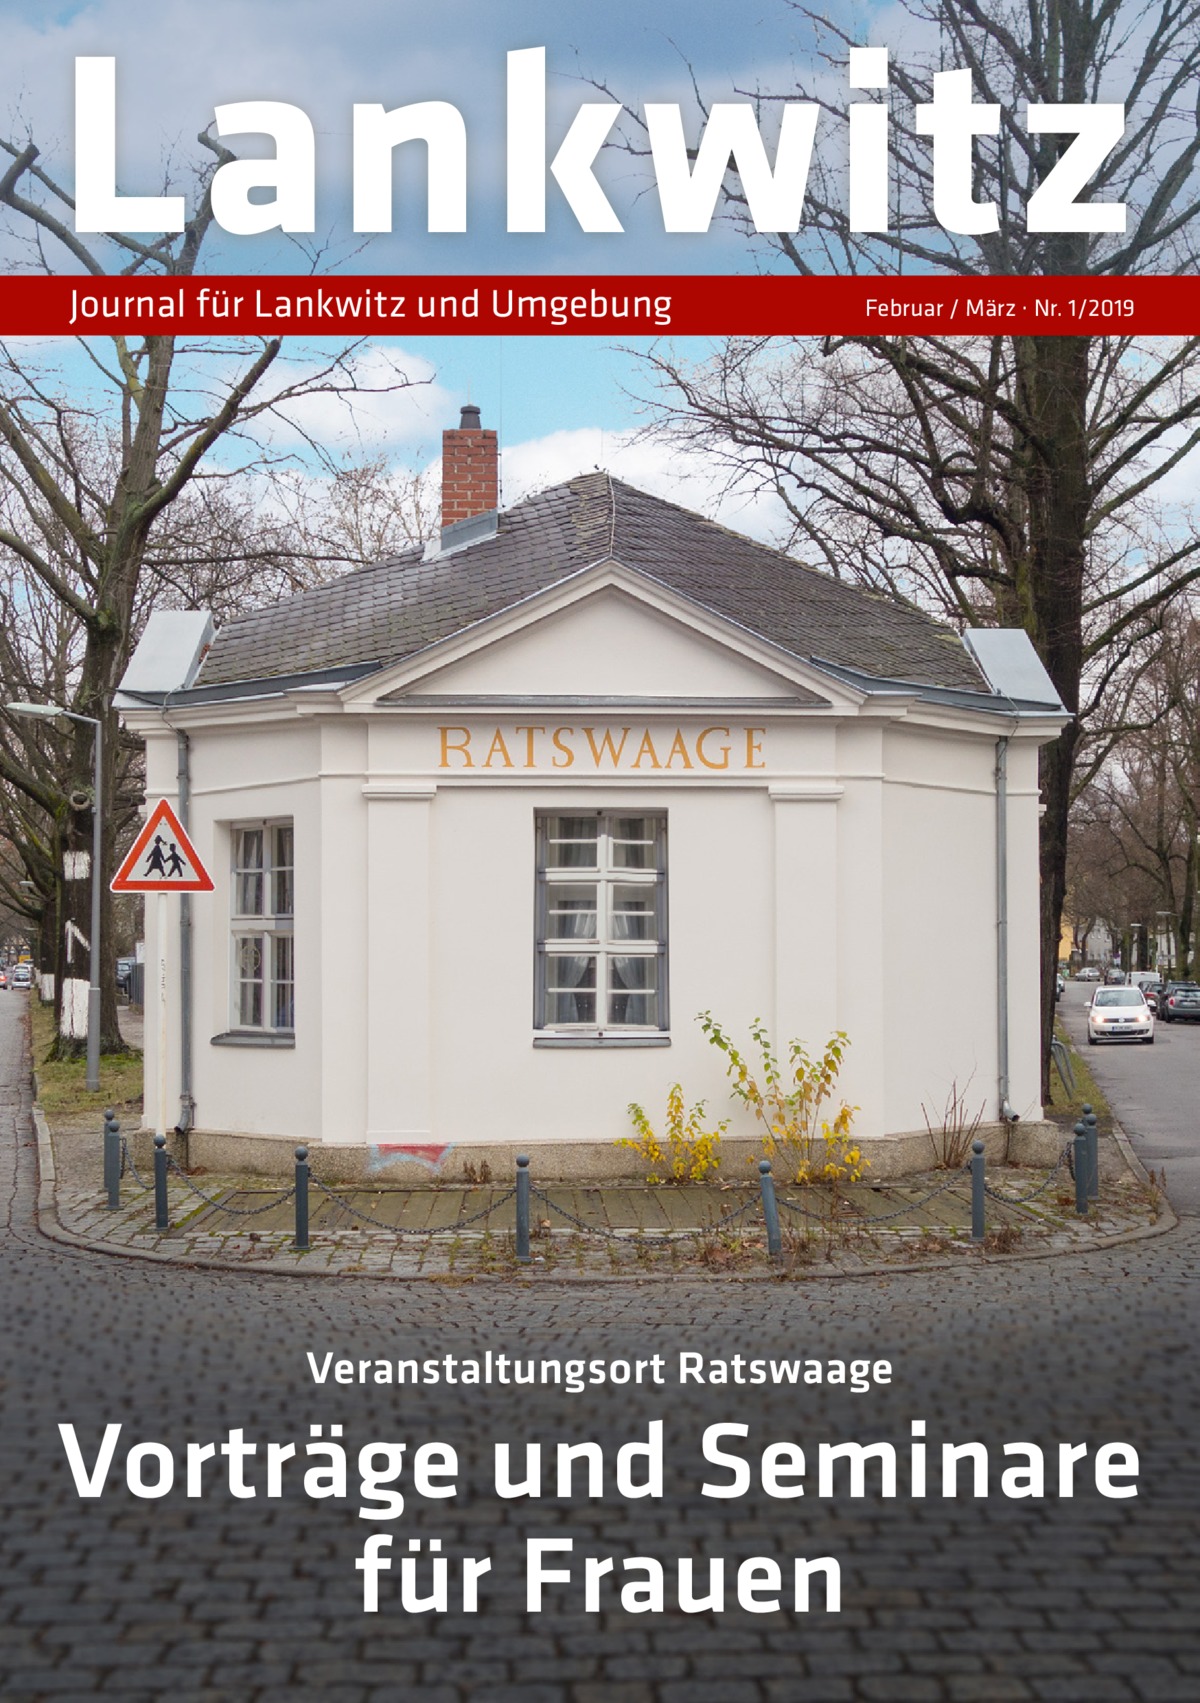 Lankwitz Journal für Lankwitz und Umgebung  Februar / März · Nr. 1/2019  Veranstaltungsort Ratswaage  Vorträge und Seminare für Frauen